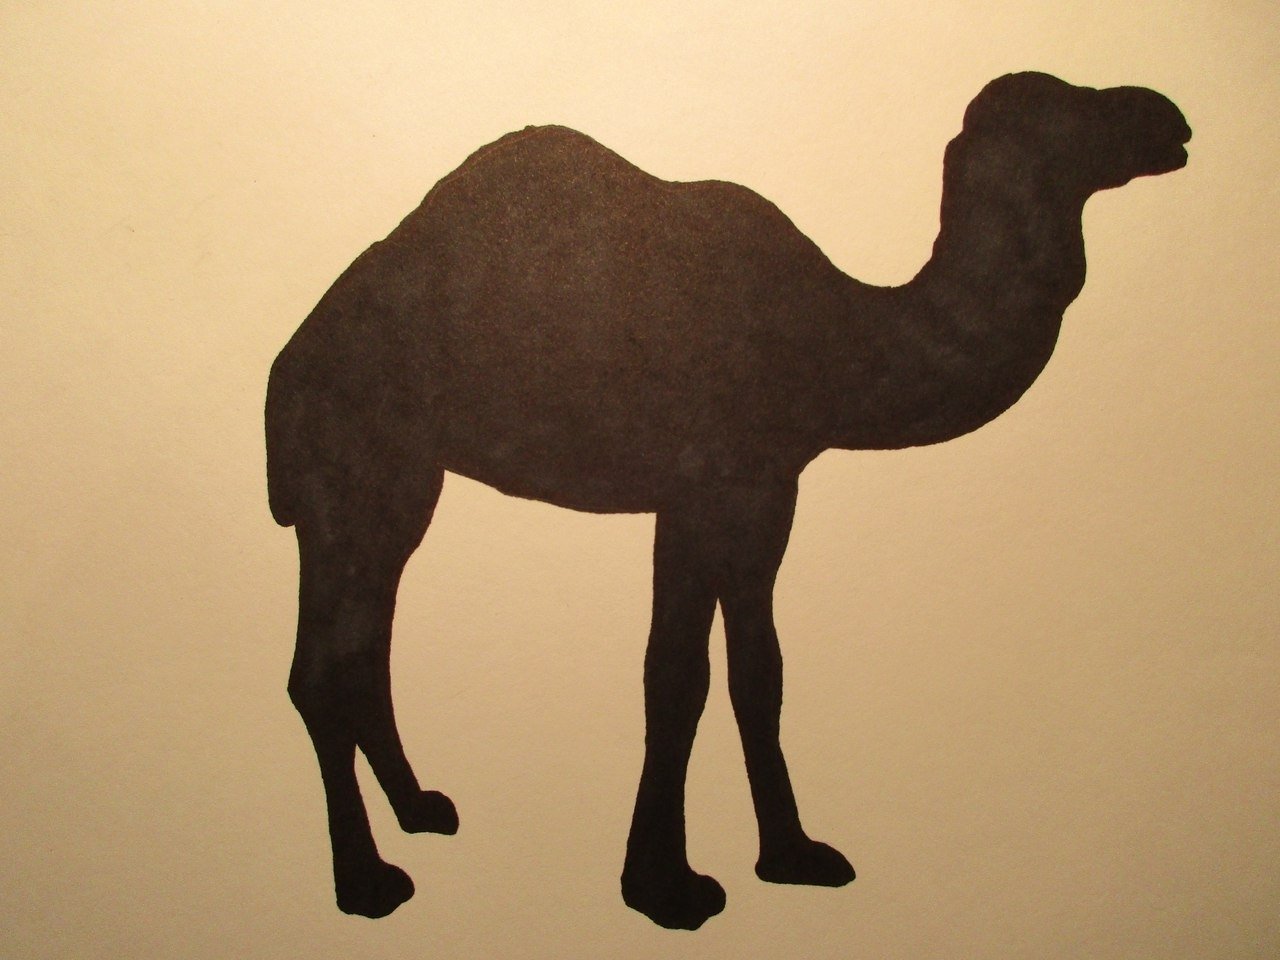 Поделки верблюд из картона идеи по изготовлению своими руками фото